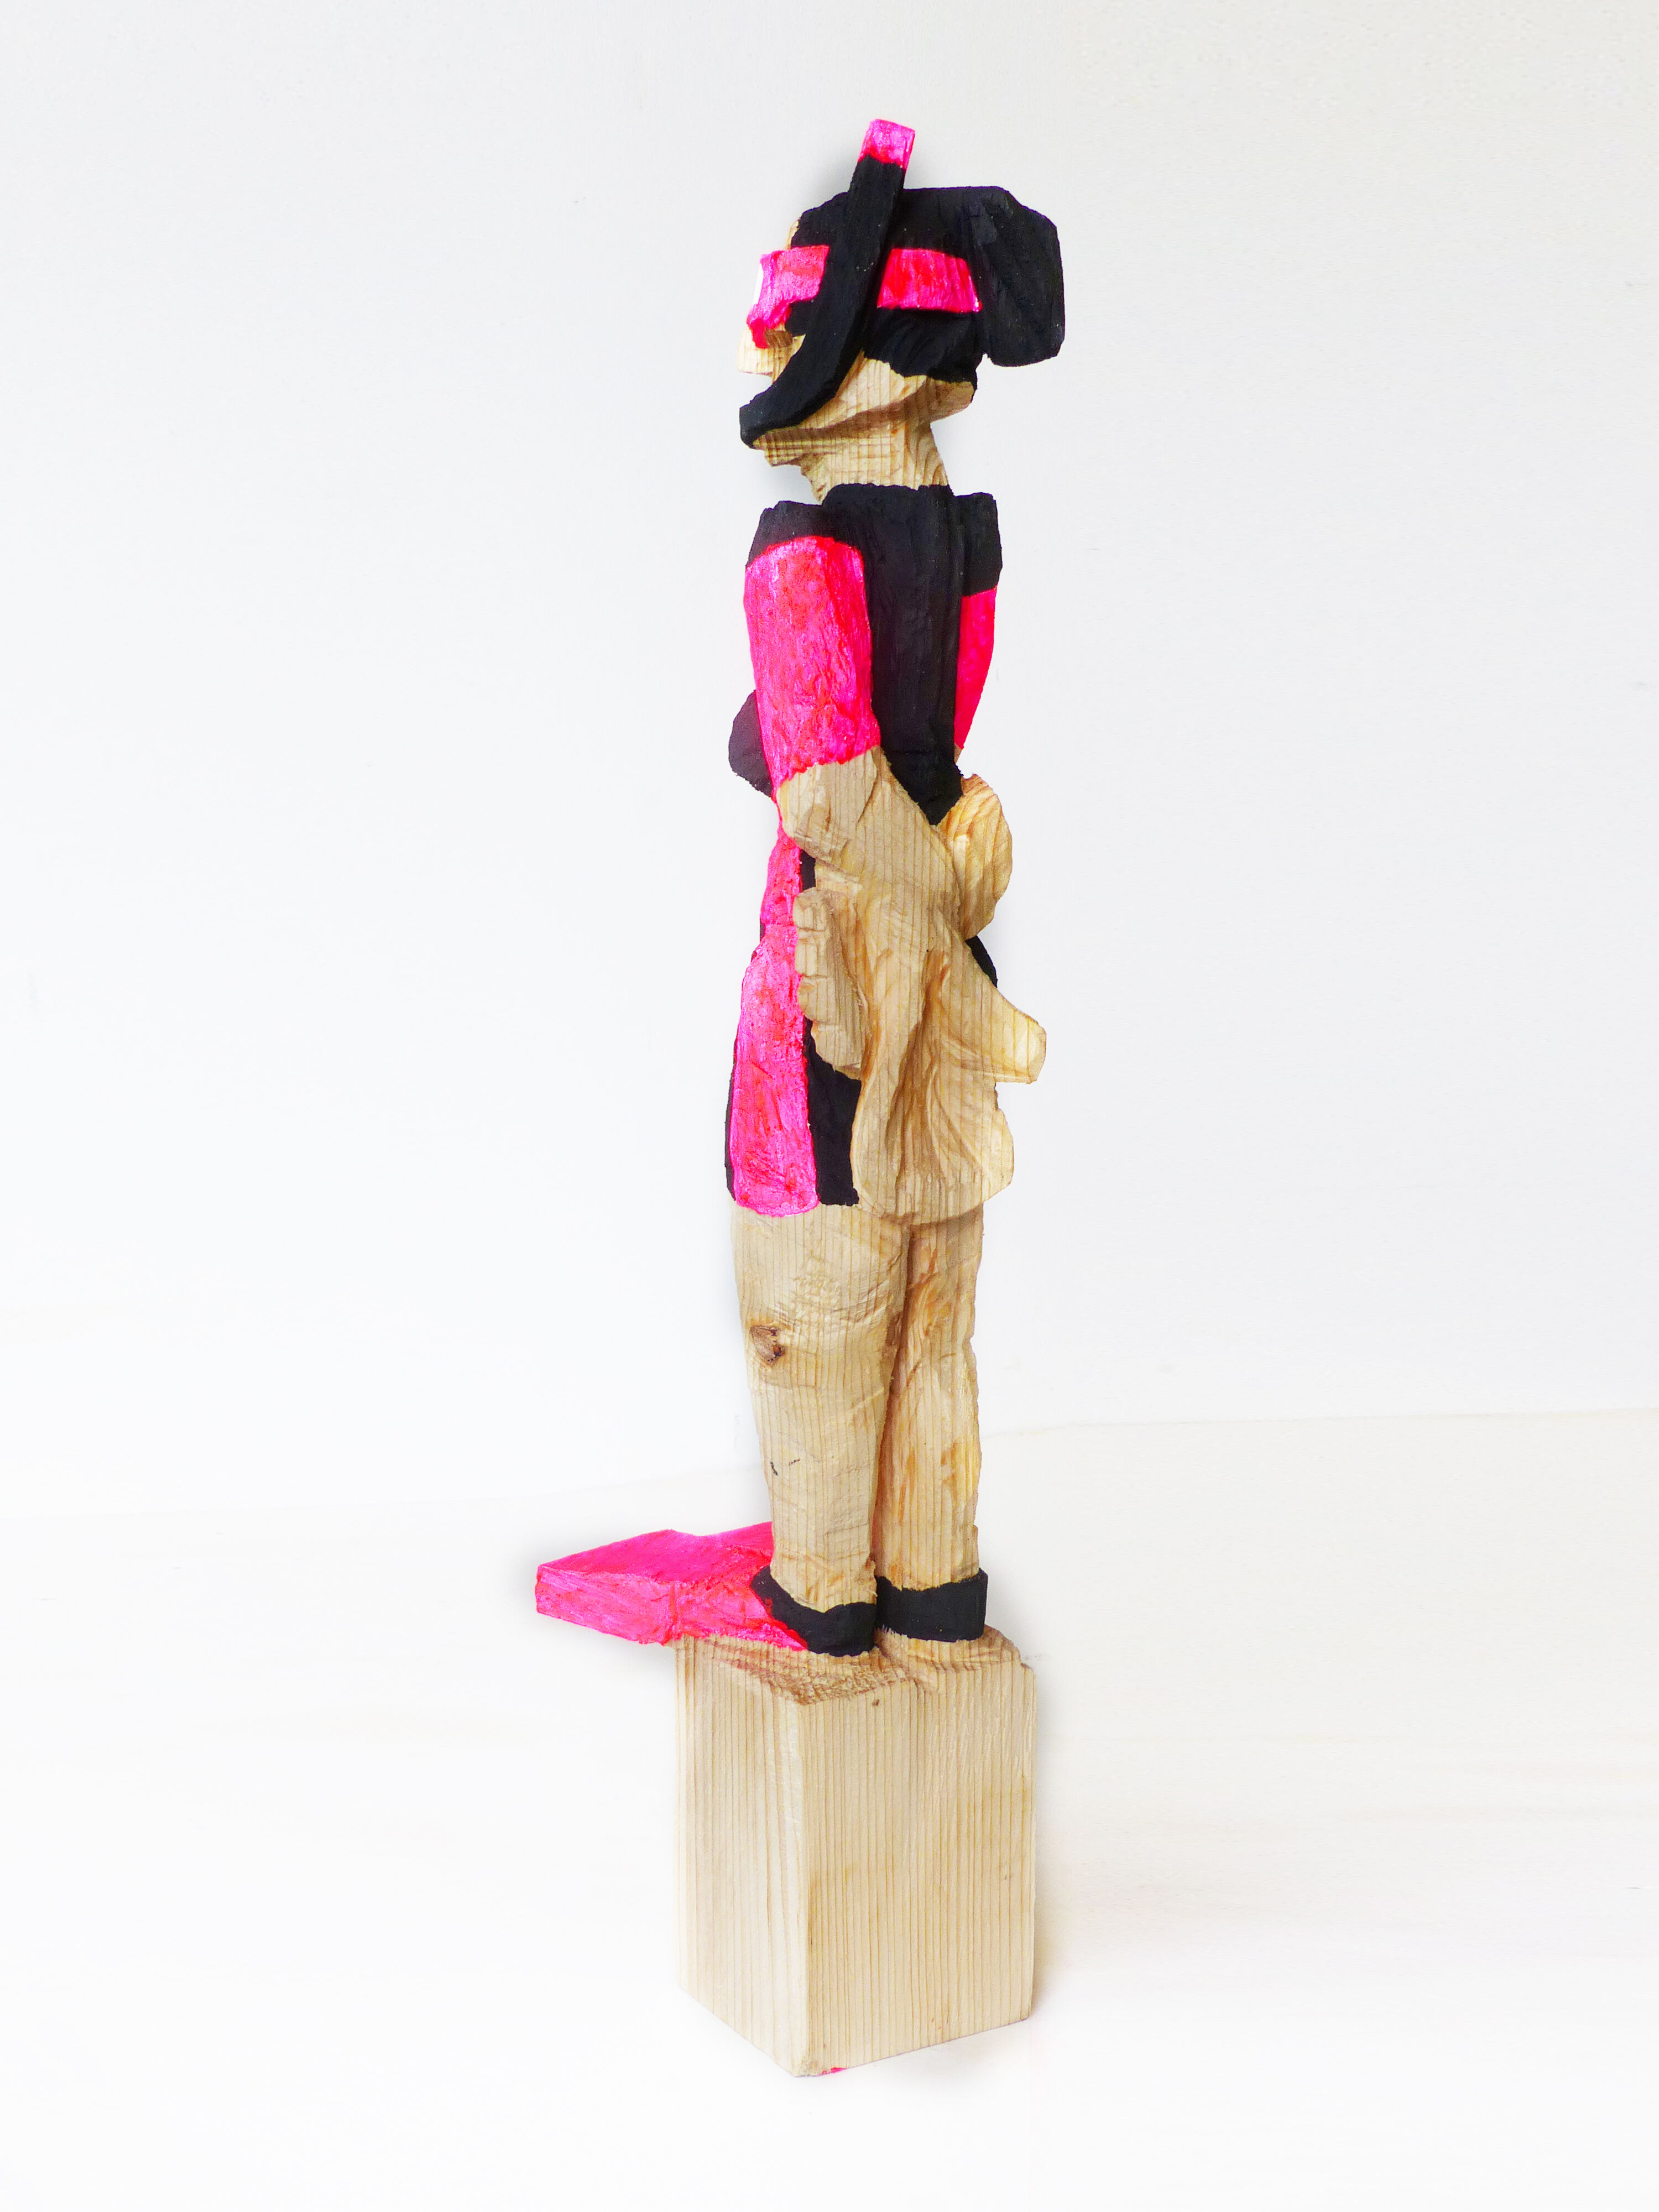 Sculpture "Snorkeler, Neon Pink" (2022)